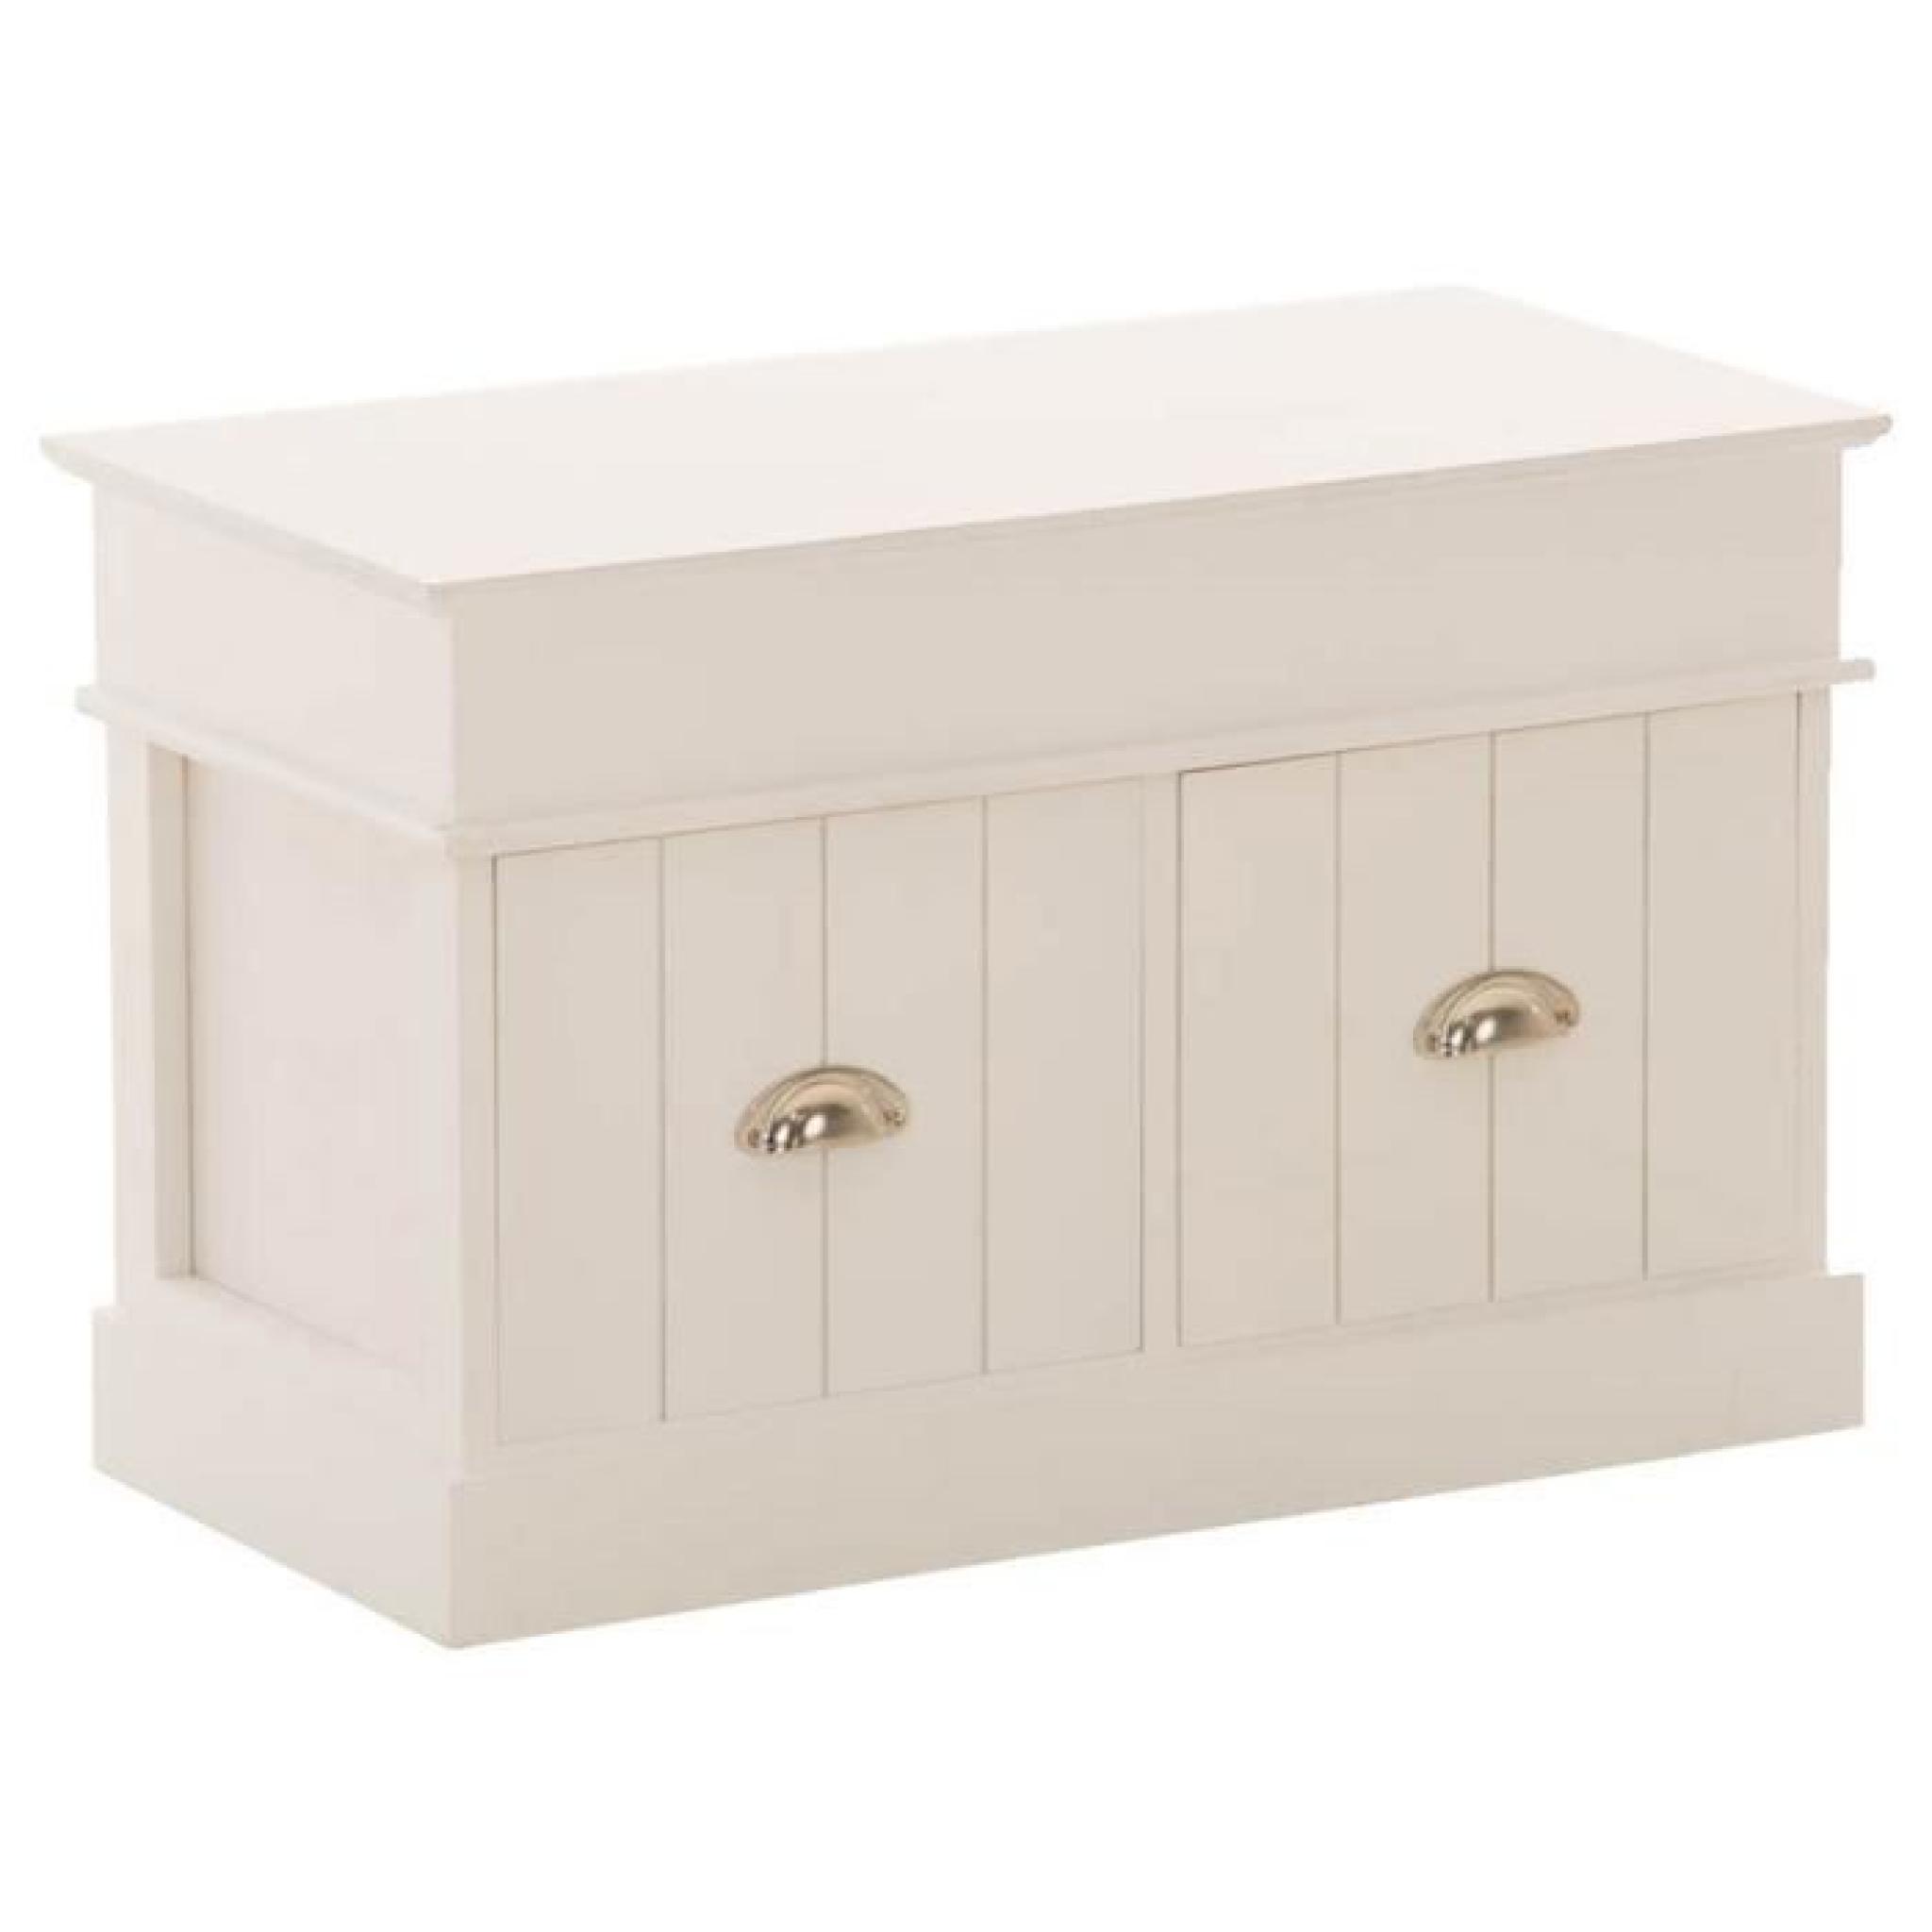 Commode en bois de paulownia coloris blanc avec 2 tiroirs et 2 compartiments - Dim : H 45.5 x L 70 x P 35 cm